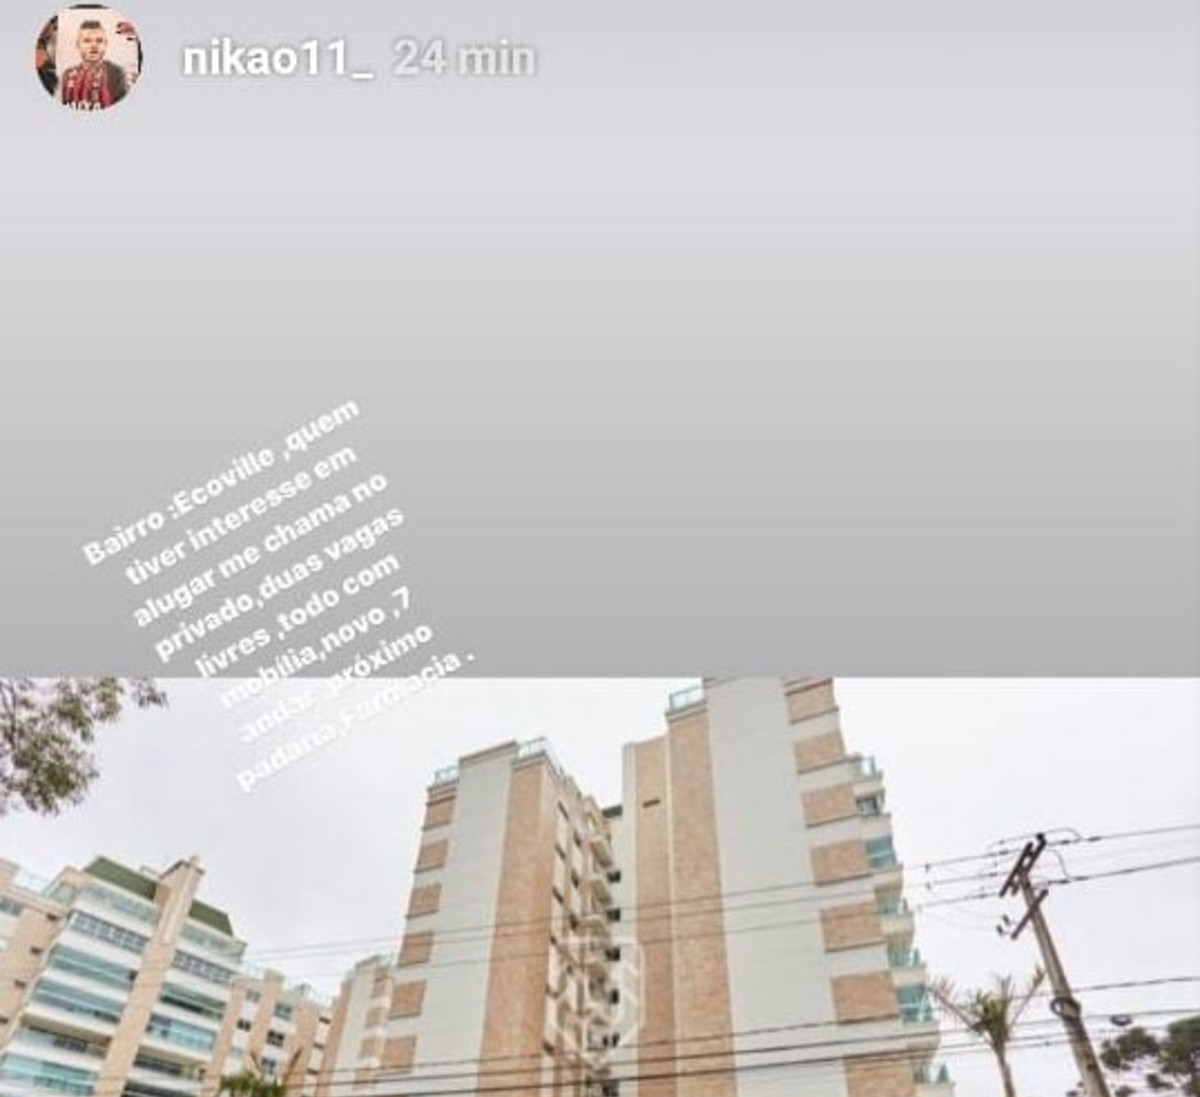 Postagem no Instagram anuncia aluguel de apartamento. Foto: Reprodução/Instagram